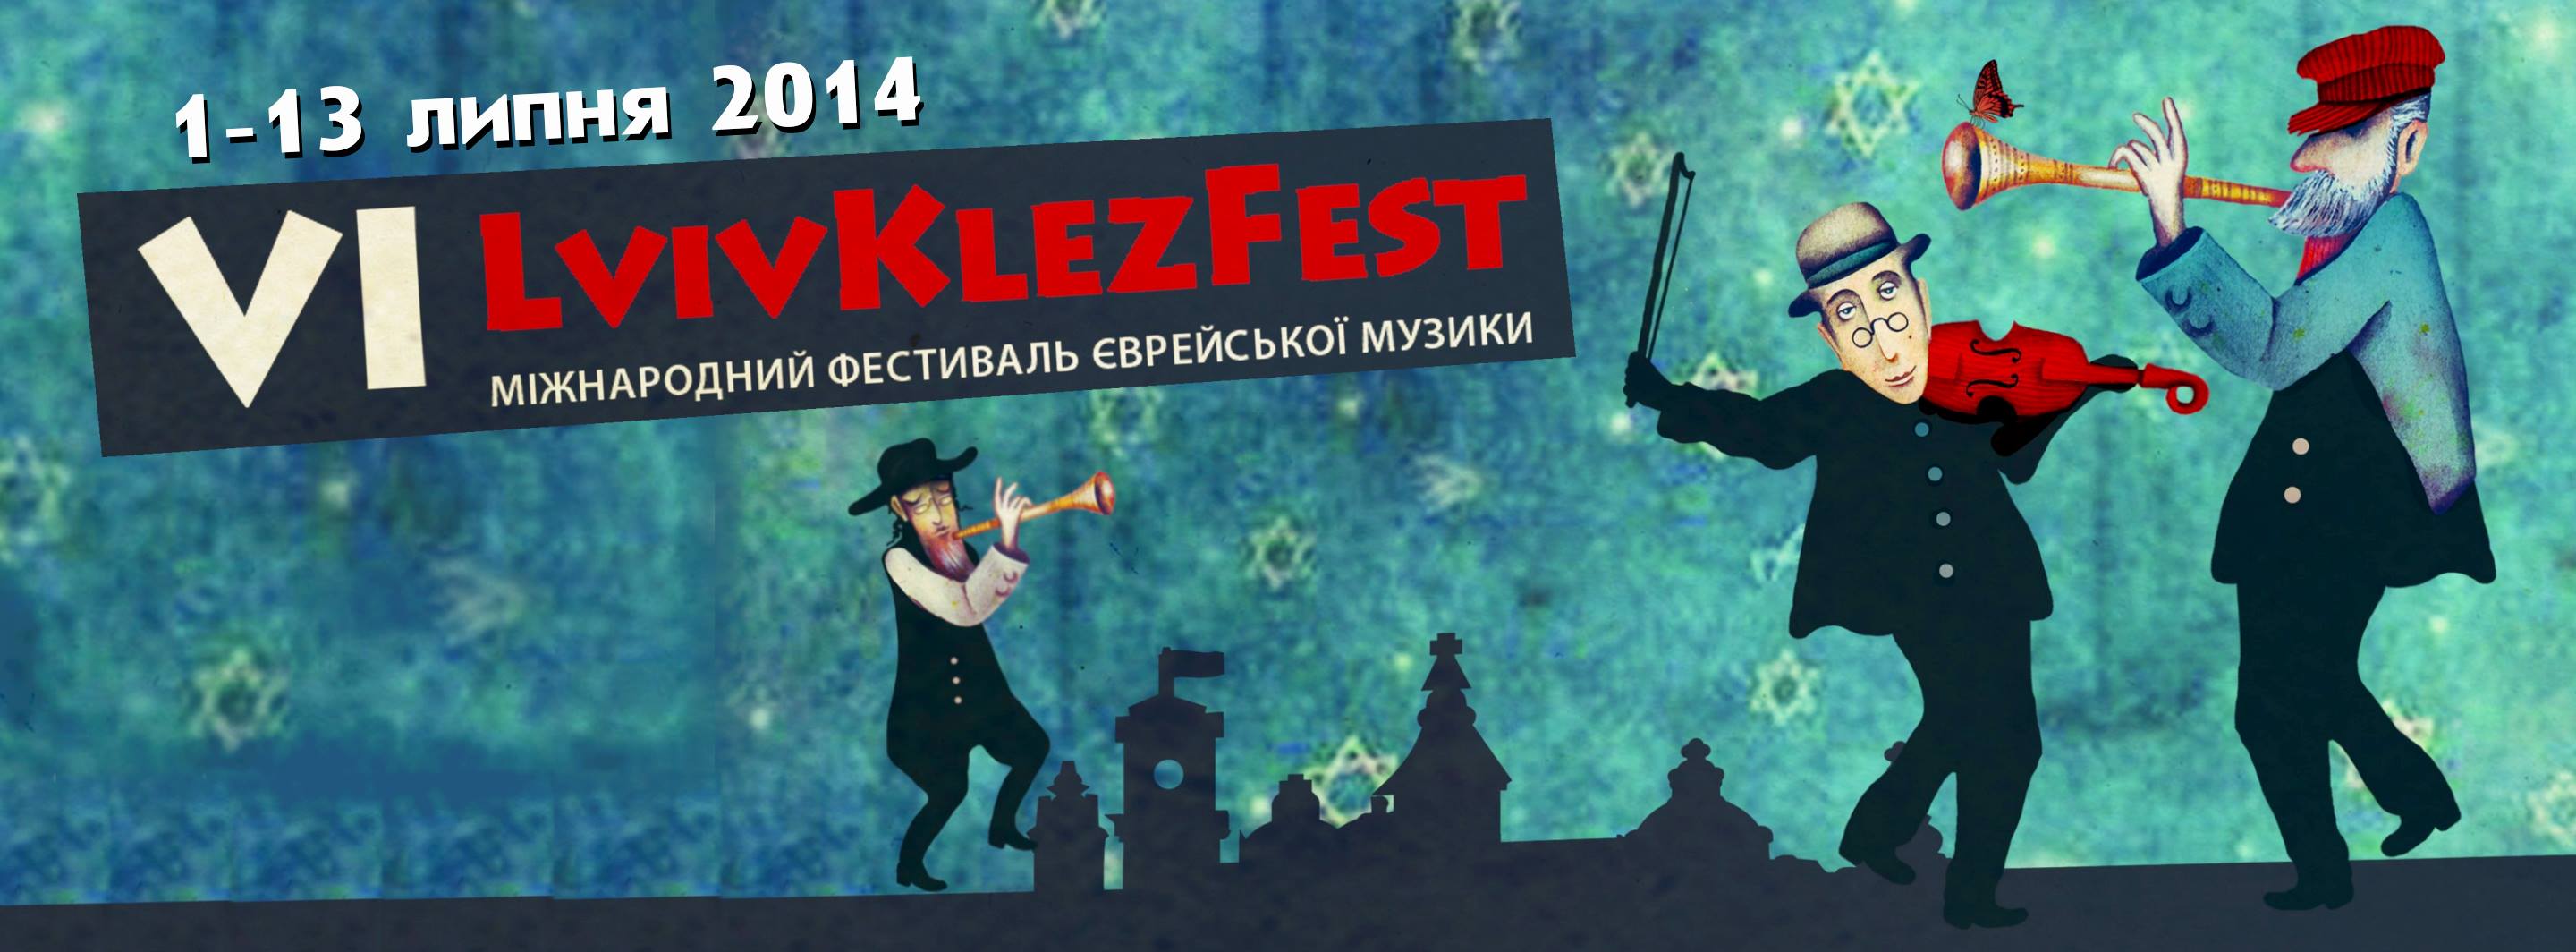 lvivklezfest-2014-anons